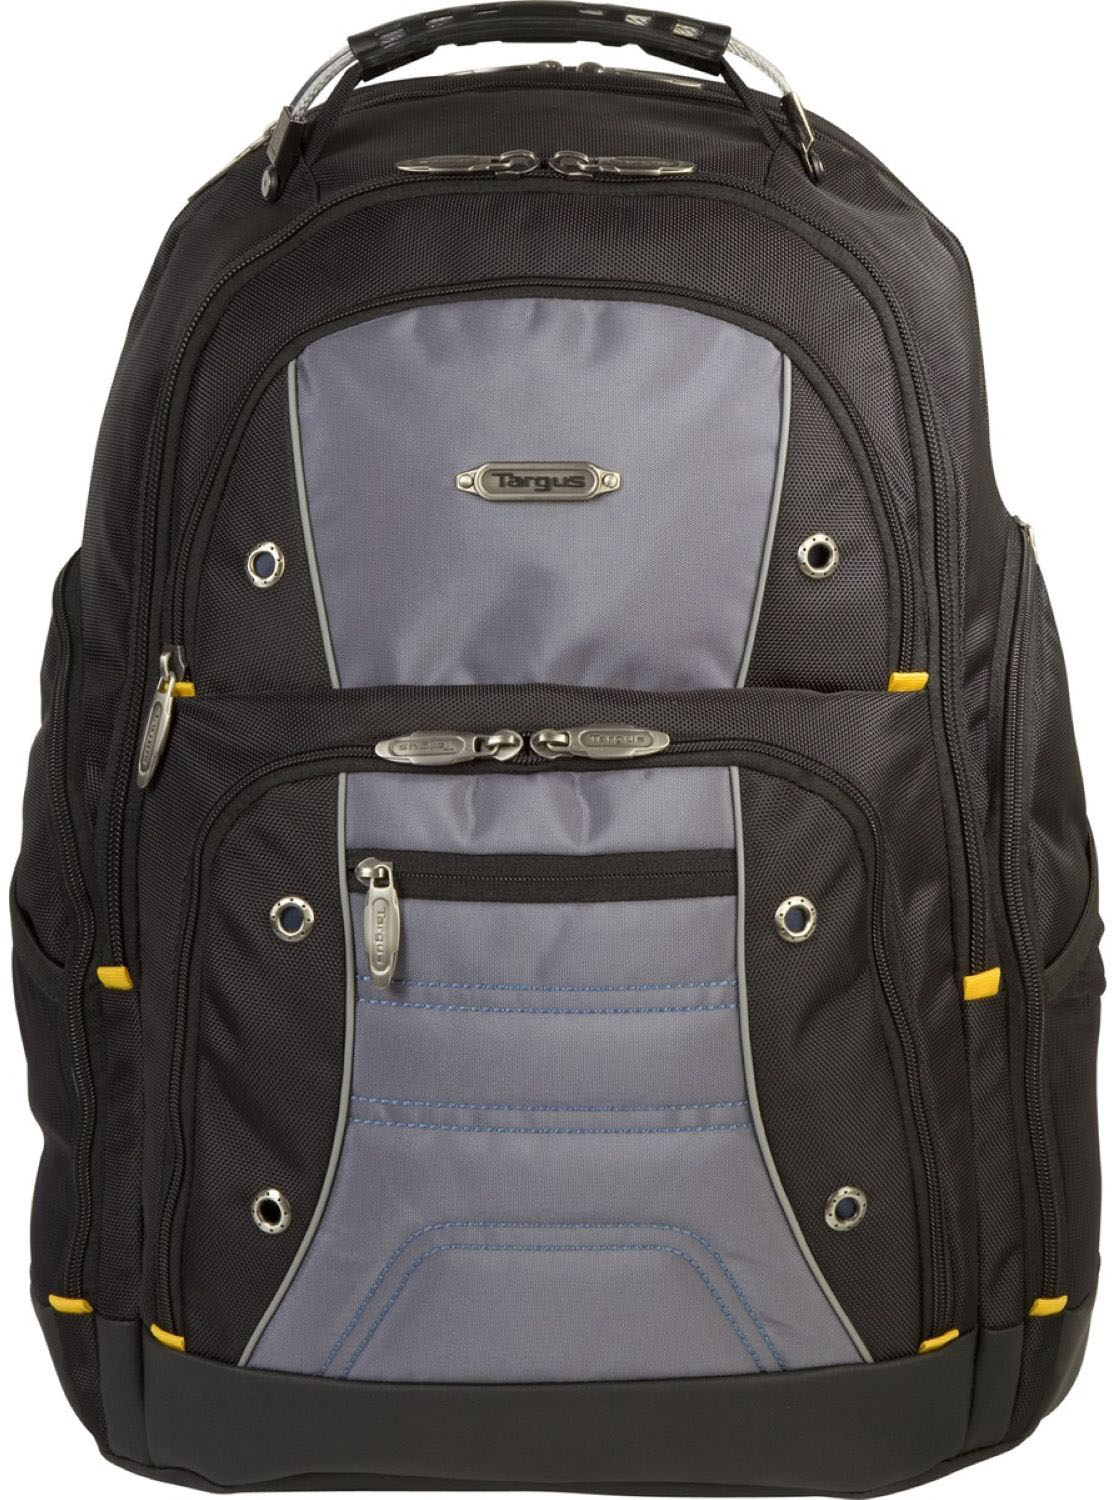 16” Targus Drifter II Laptop Backpack (Black) $35 + Free Curbside Pickup at Best Buy